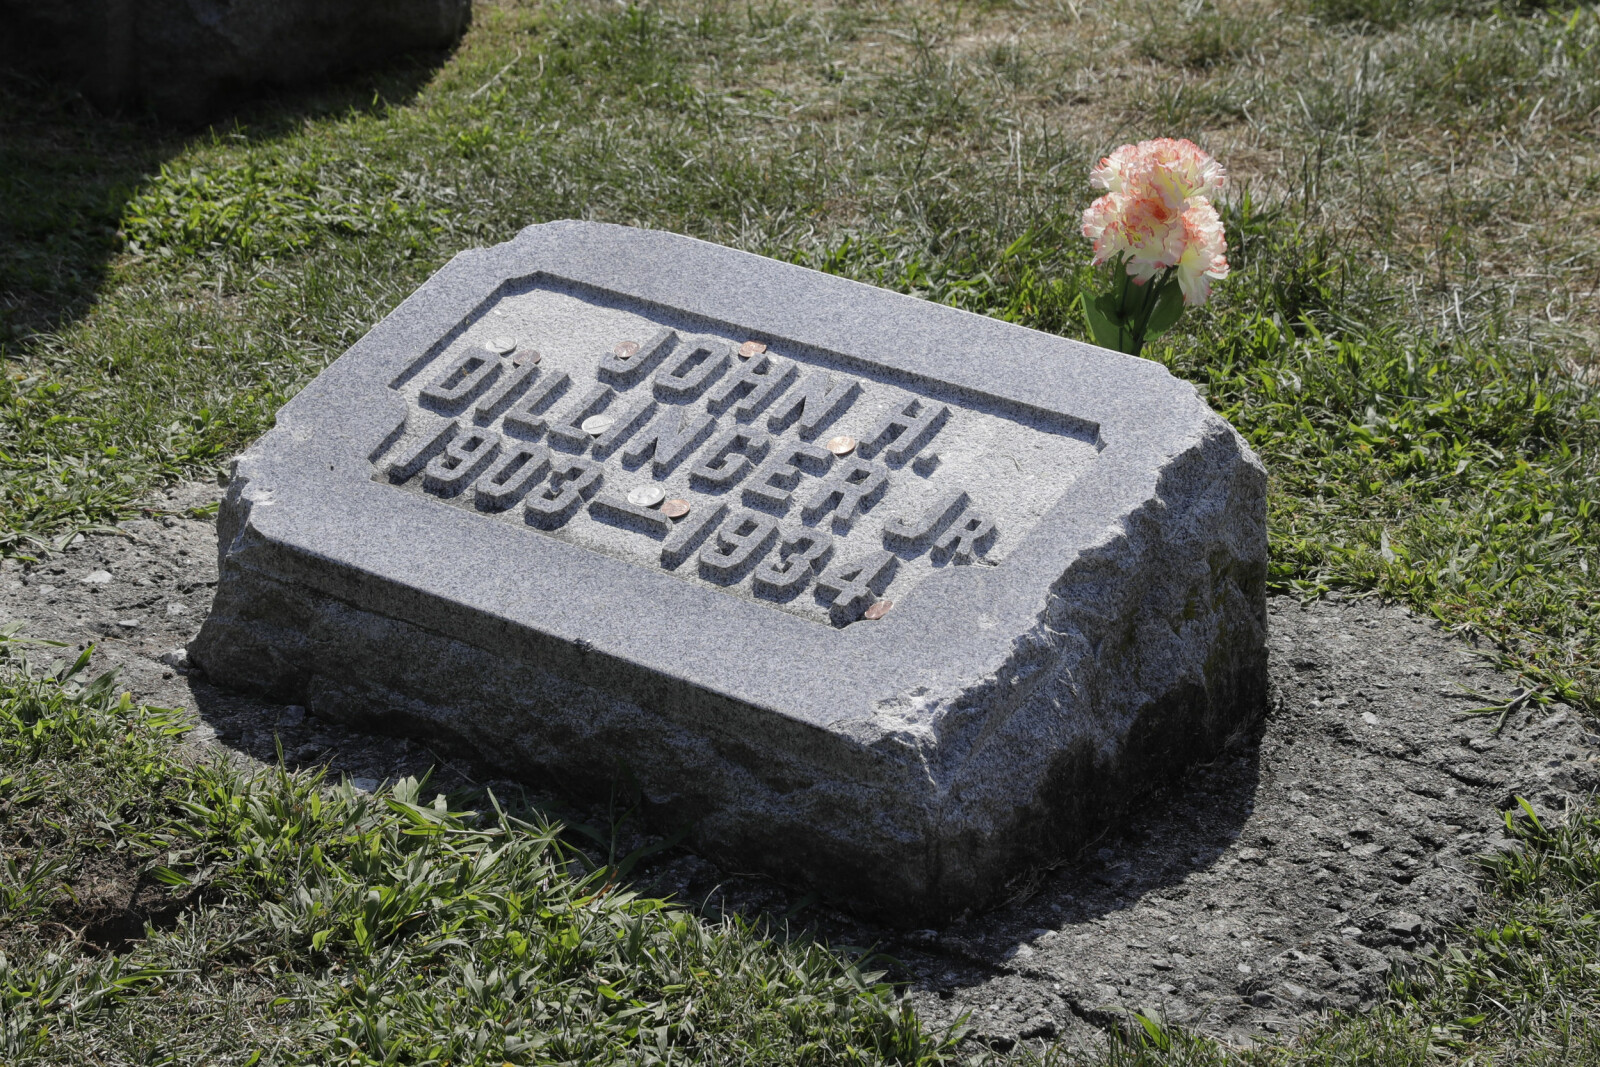 <b>GRUNDIG BEGRAVET:</b> Tilhengere av Dillinger har siden 1934 slått av deler av gangsterens gravstein. Nå skal graven åpnes.